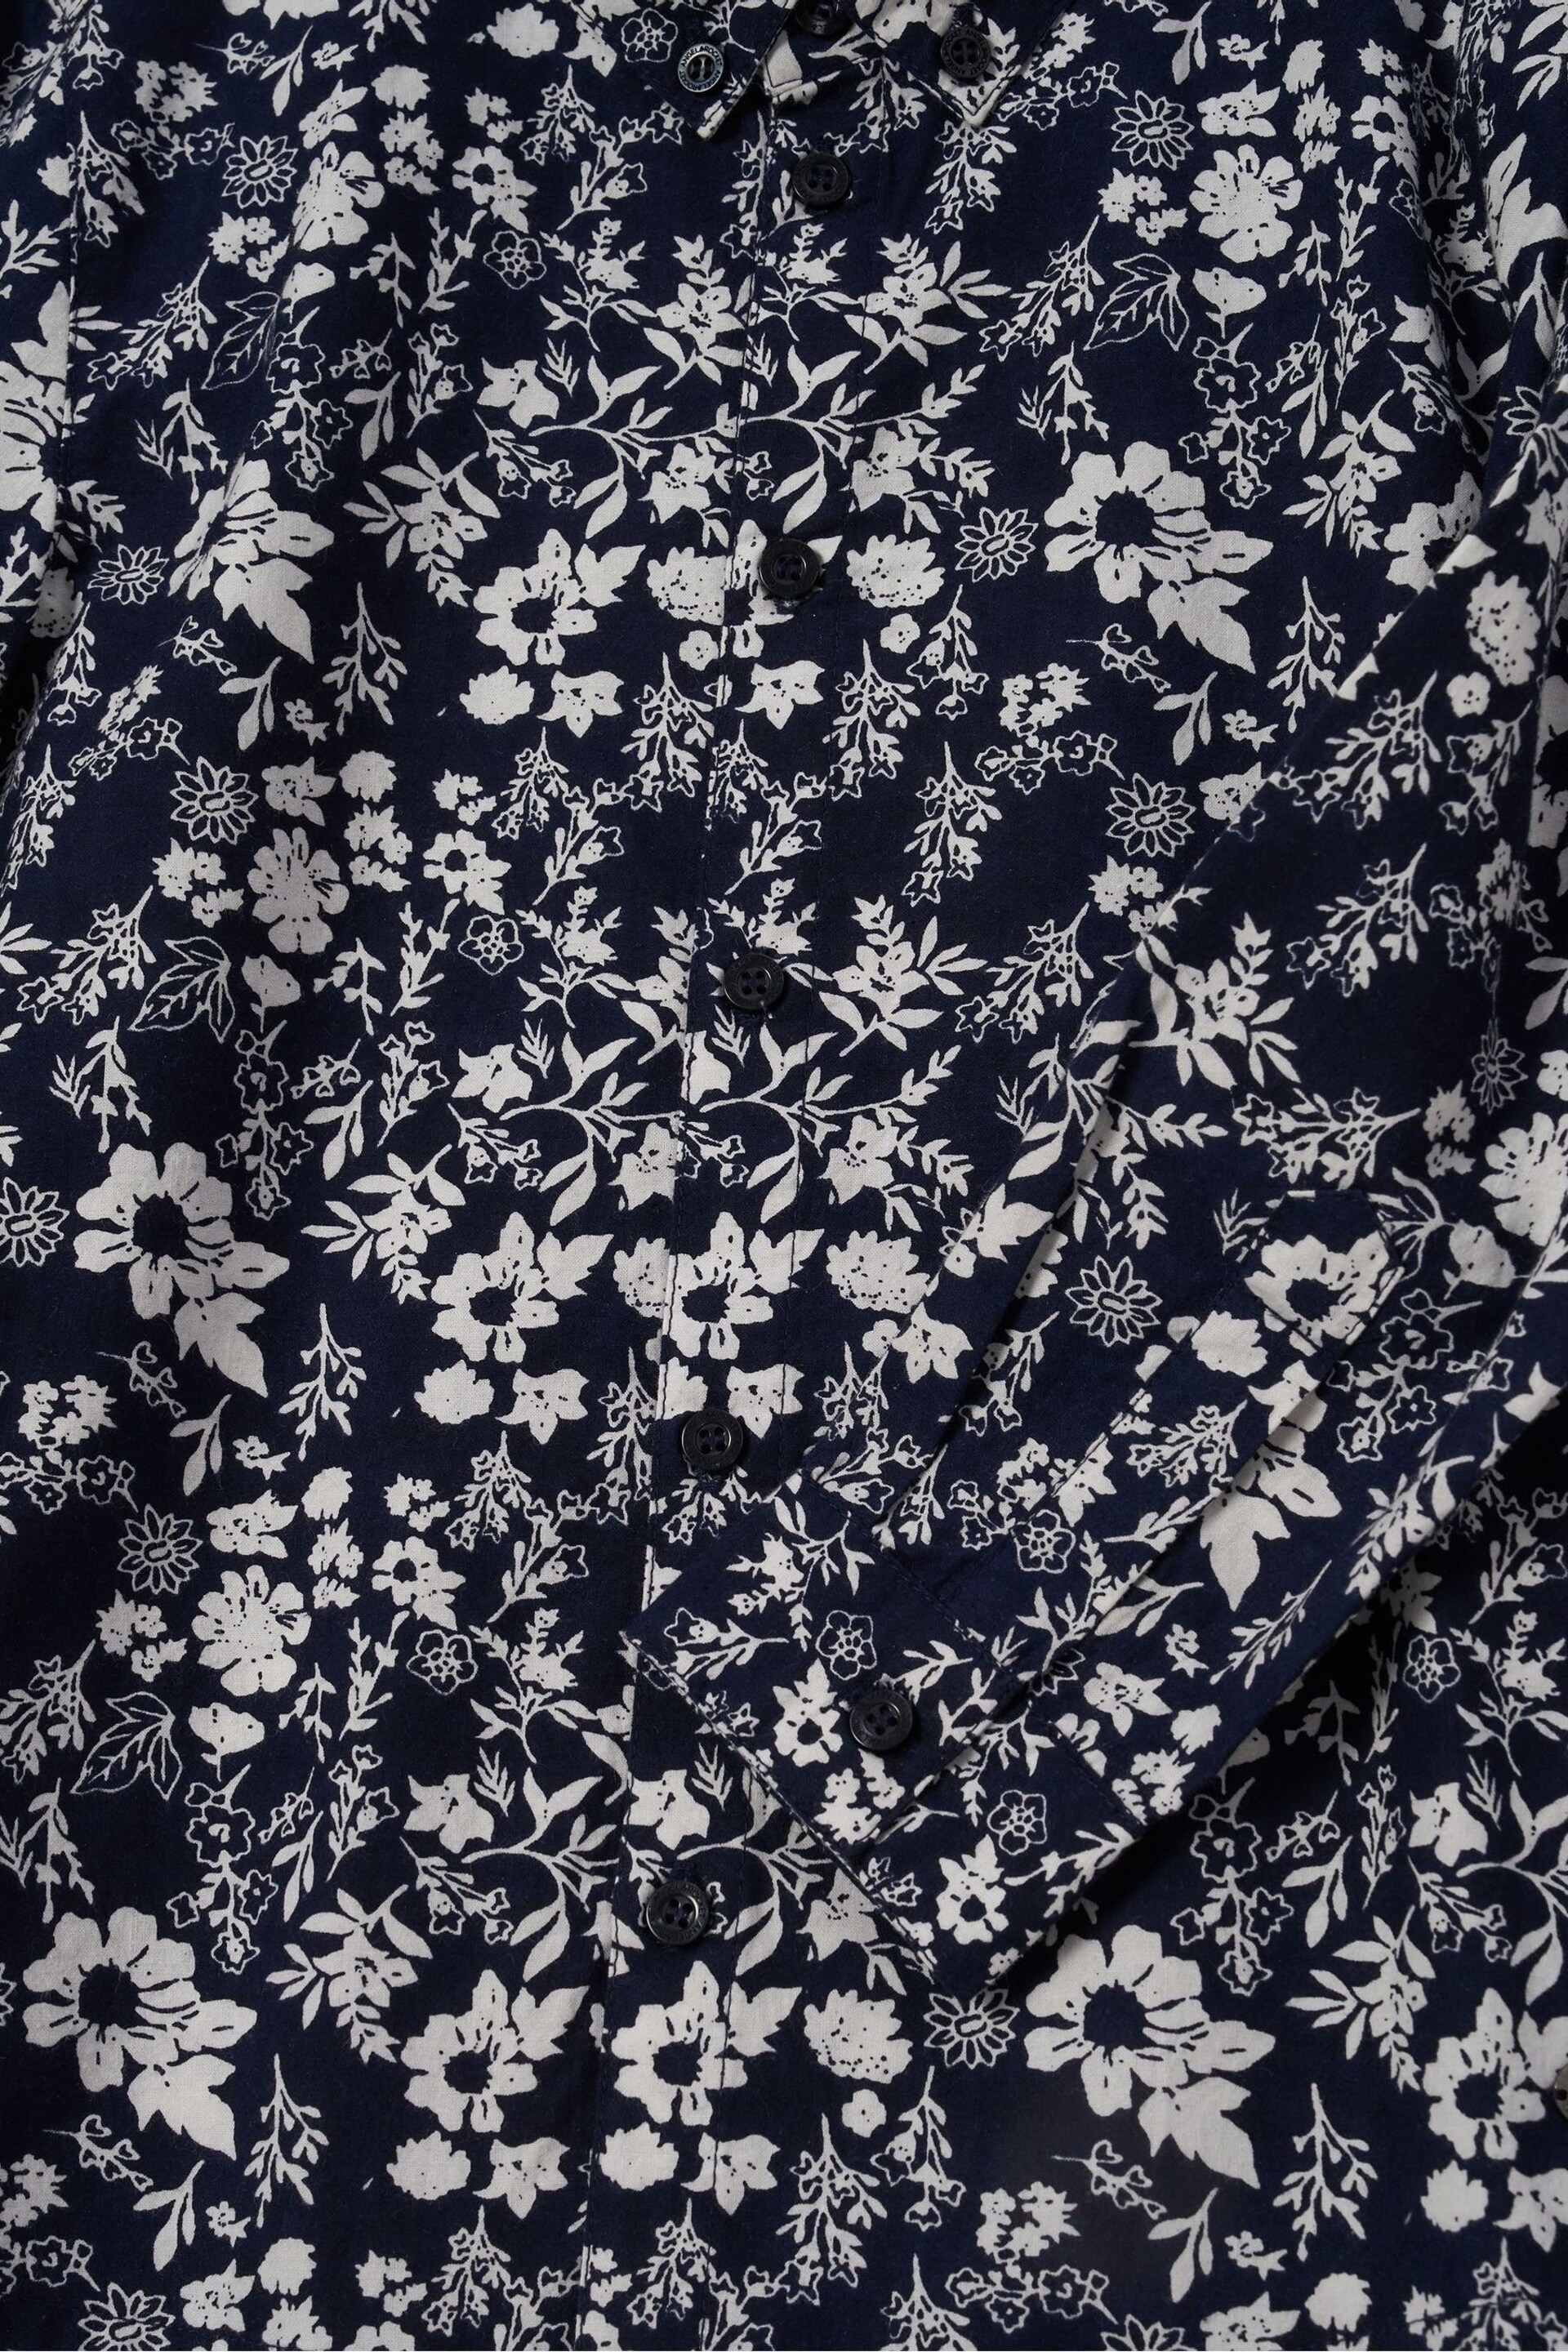 Angel & Rocket Blue Faes Floral Printed Shirt - Image 6 of 6